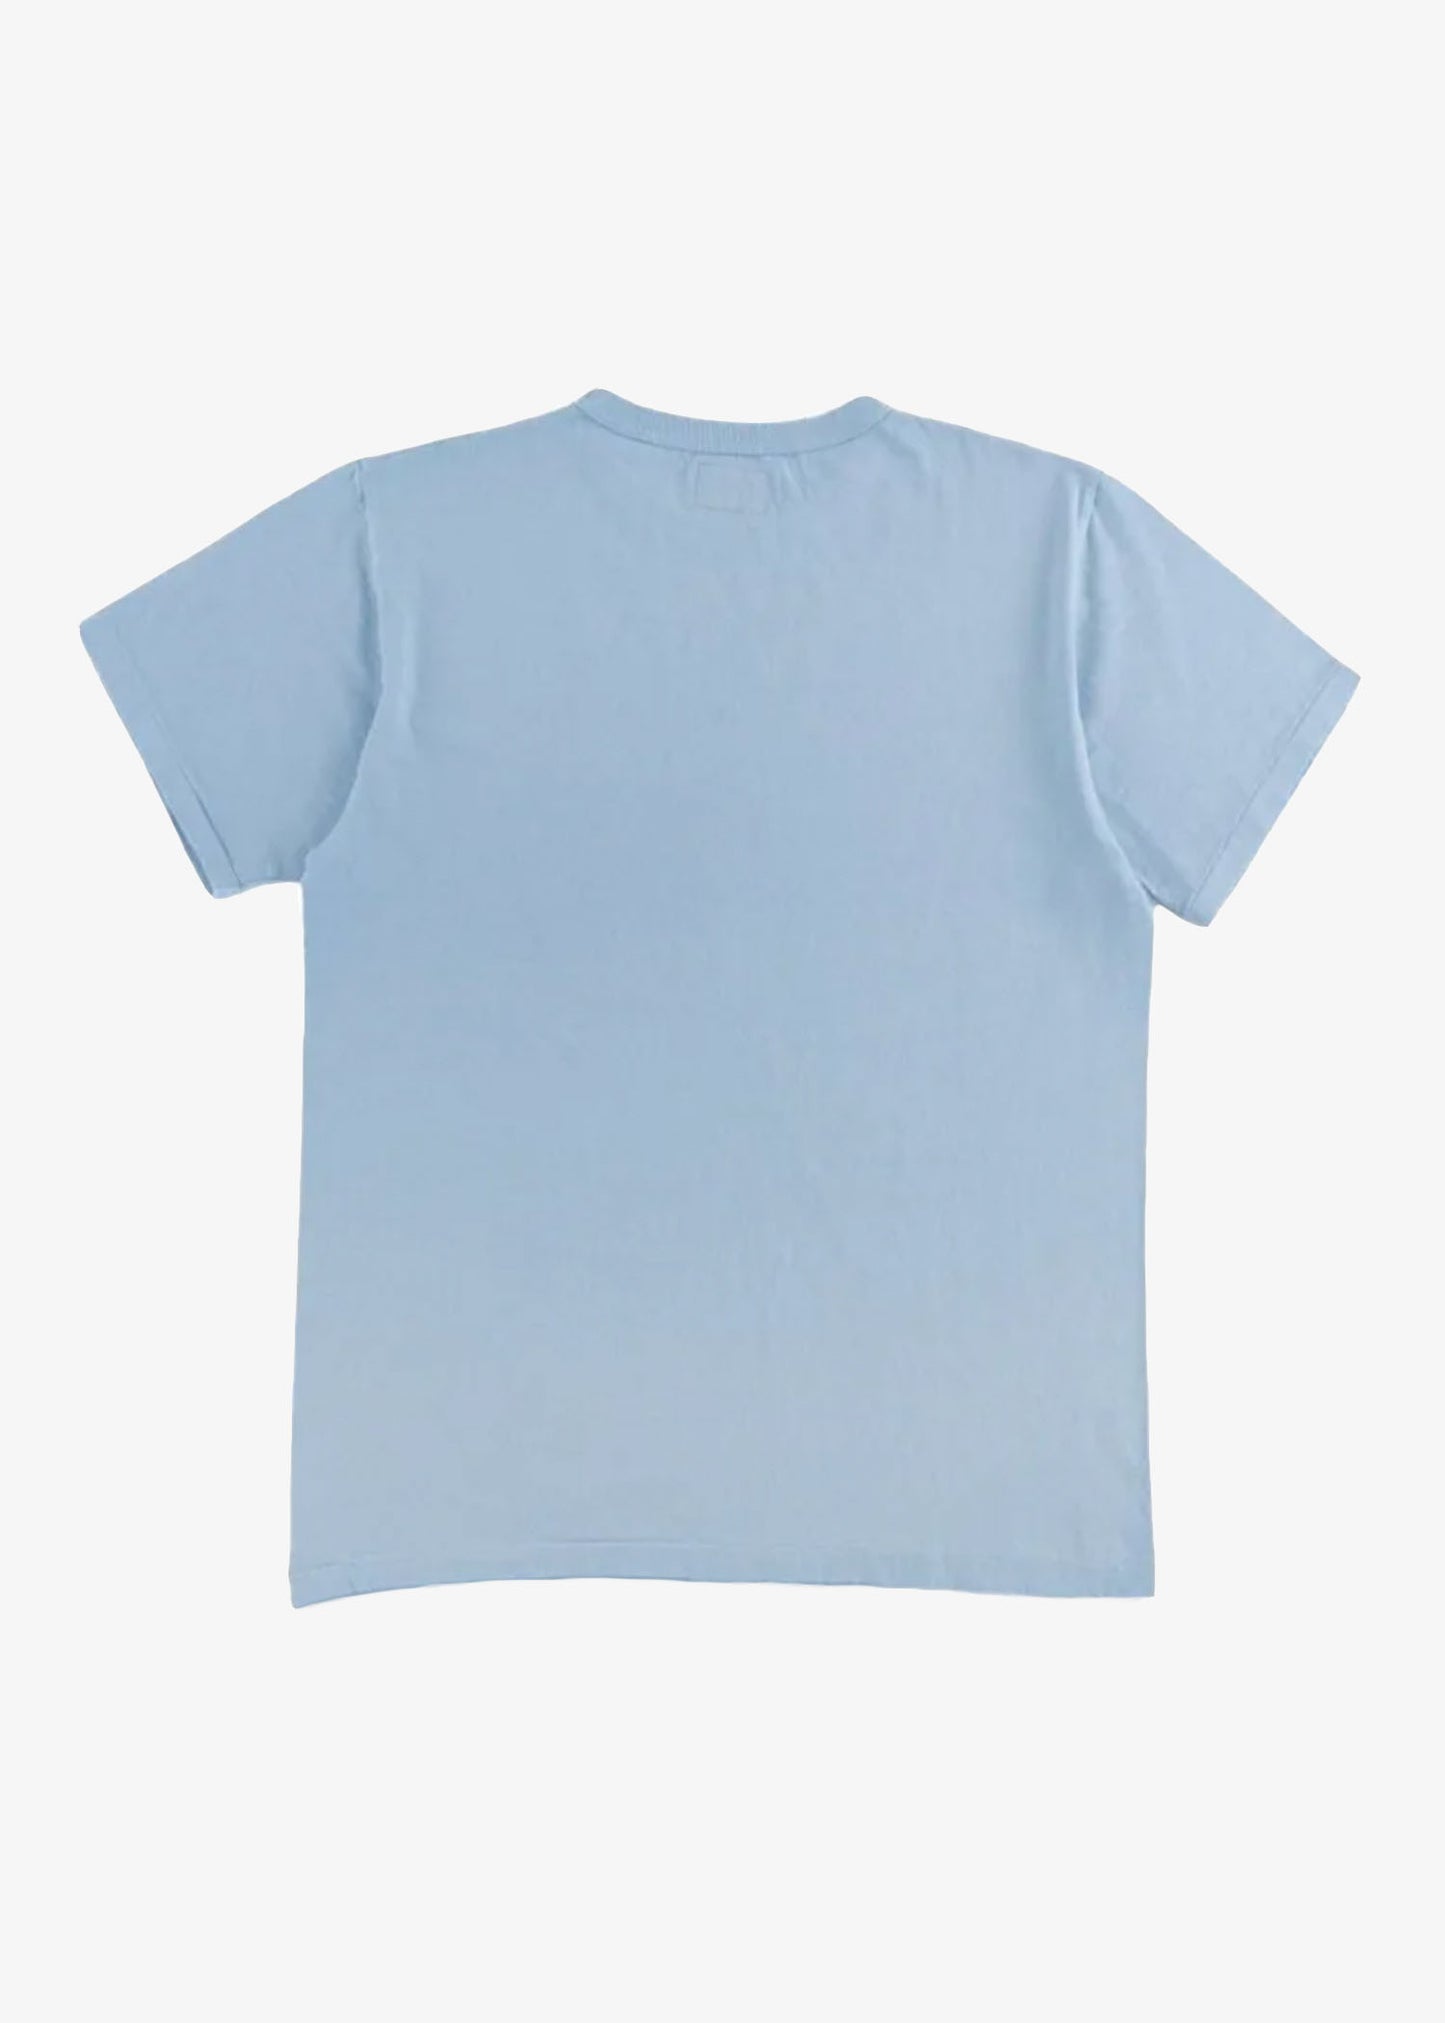 sunray-haleiwa-t-shirt | Top | Sunray Sportswear